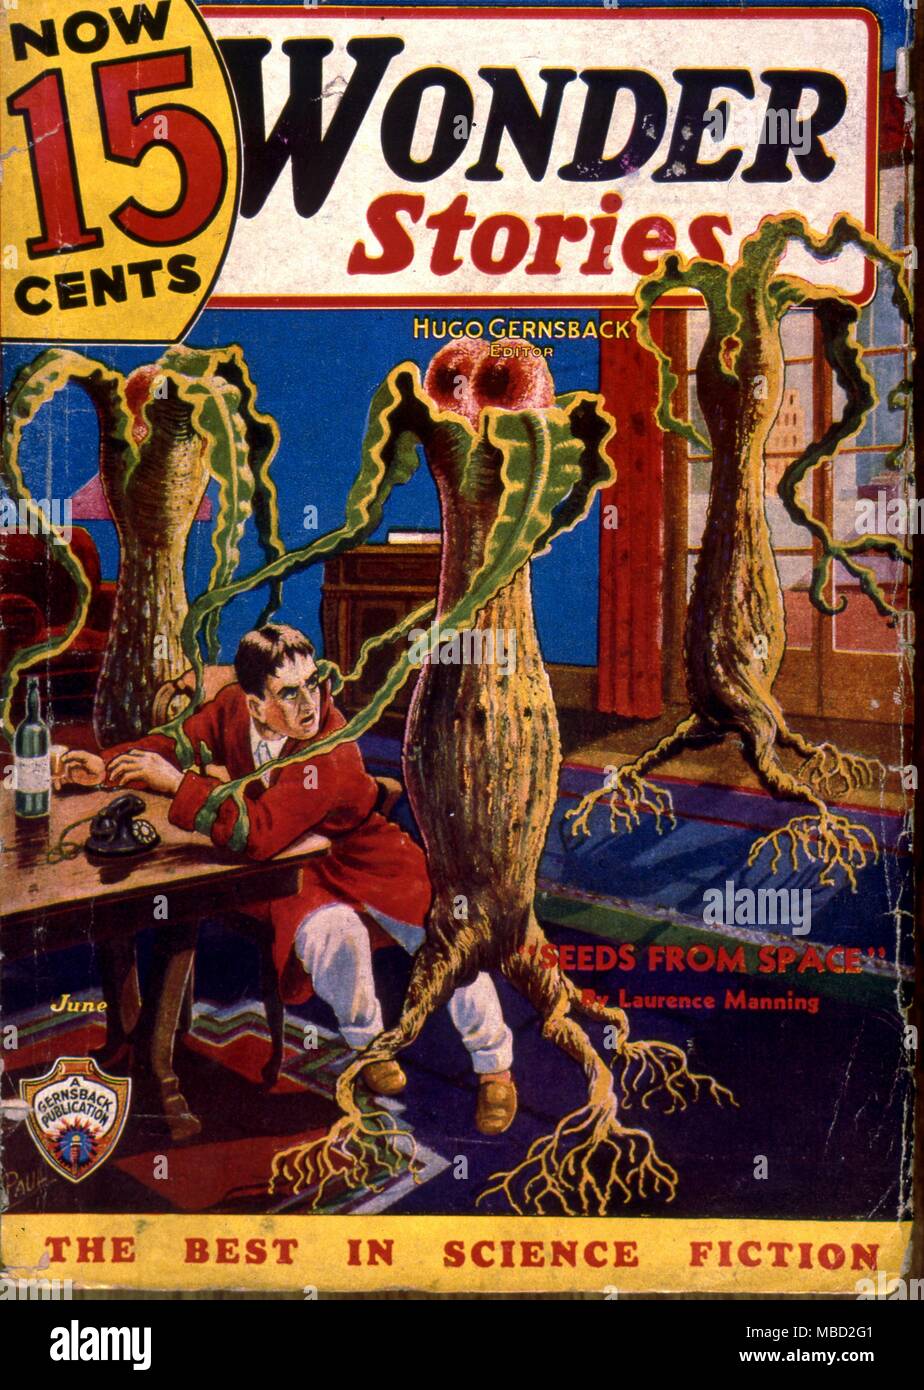 Mostri. La copertura di storie di meraviglia di un American science fiction comic. Illustrazione di Paolo. 1935 Foto Stock